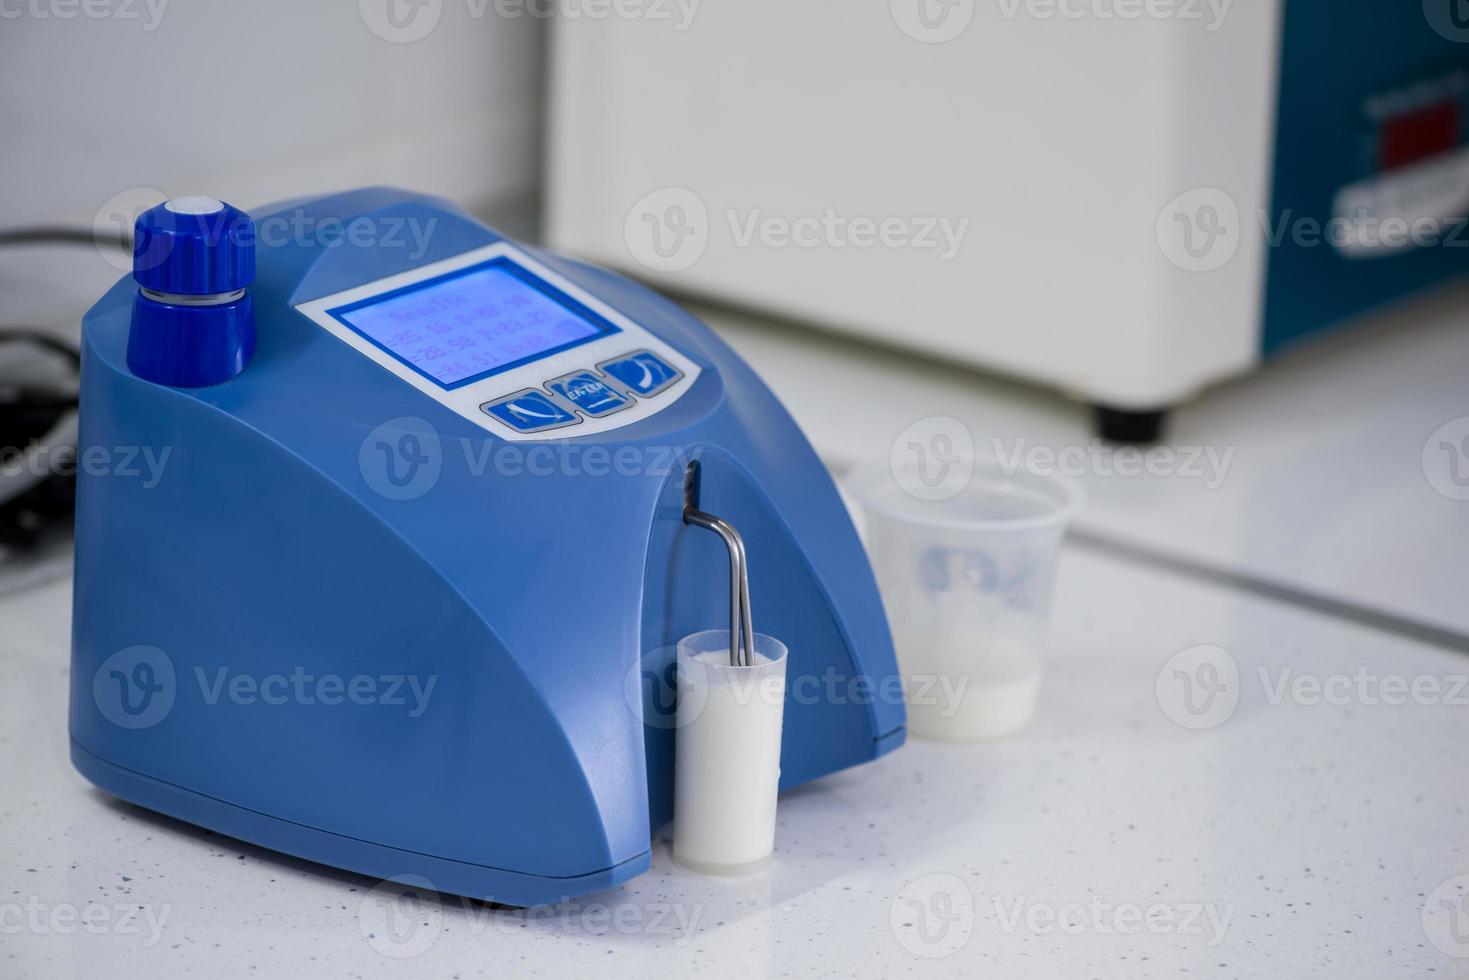 analyse en testen van zuivelproducten op een modern apparaat. testlaboratorium van een melkfabriek foto